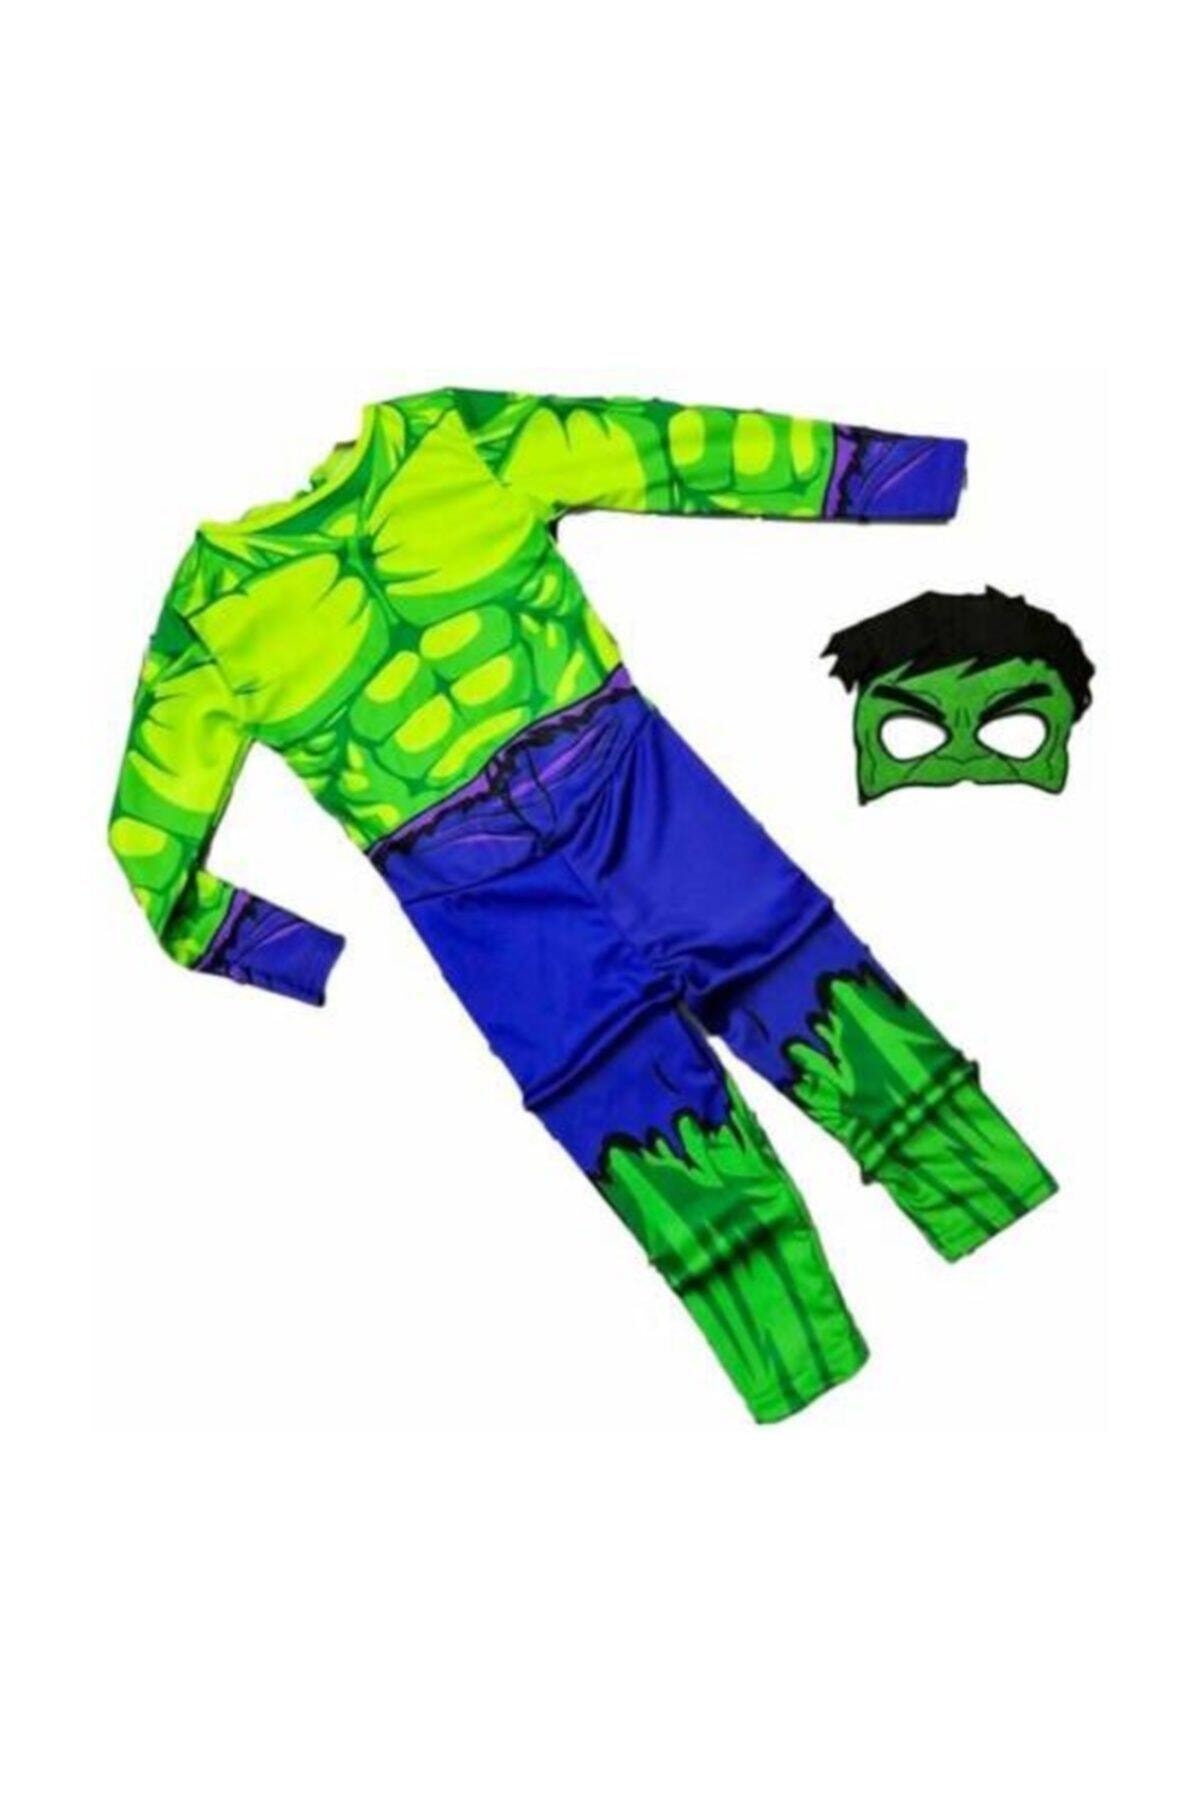 Hulk Çocuk Kostümü - Yeşil Dev Hulk Adam Çocuk Kostümü